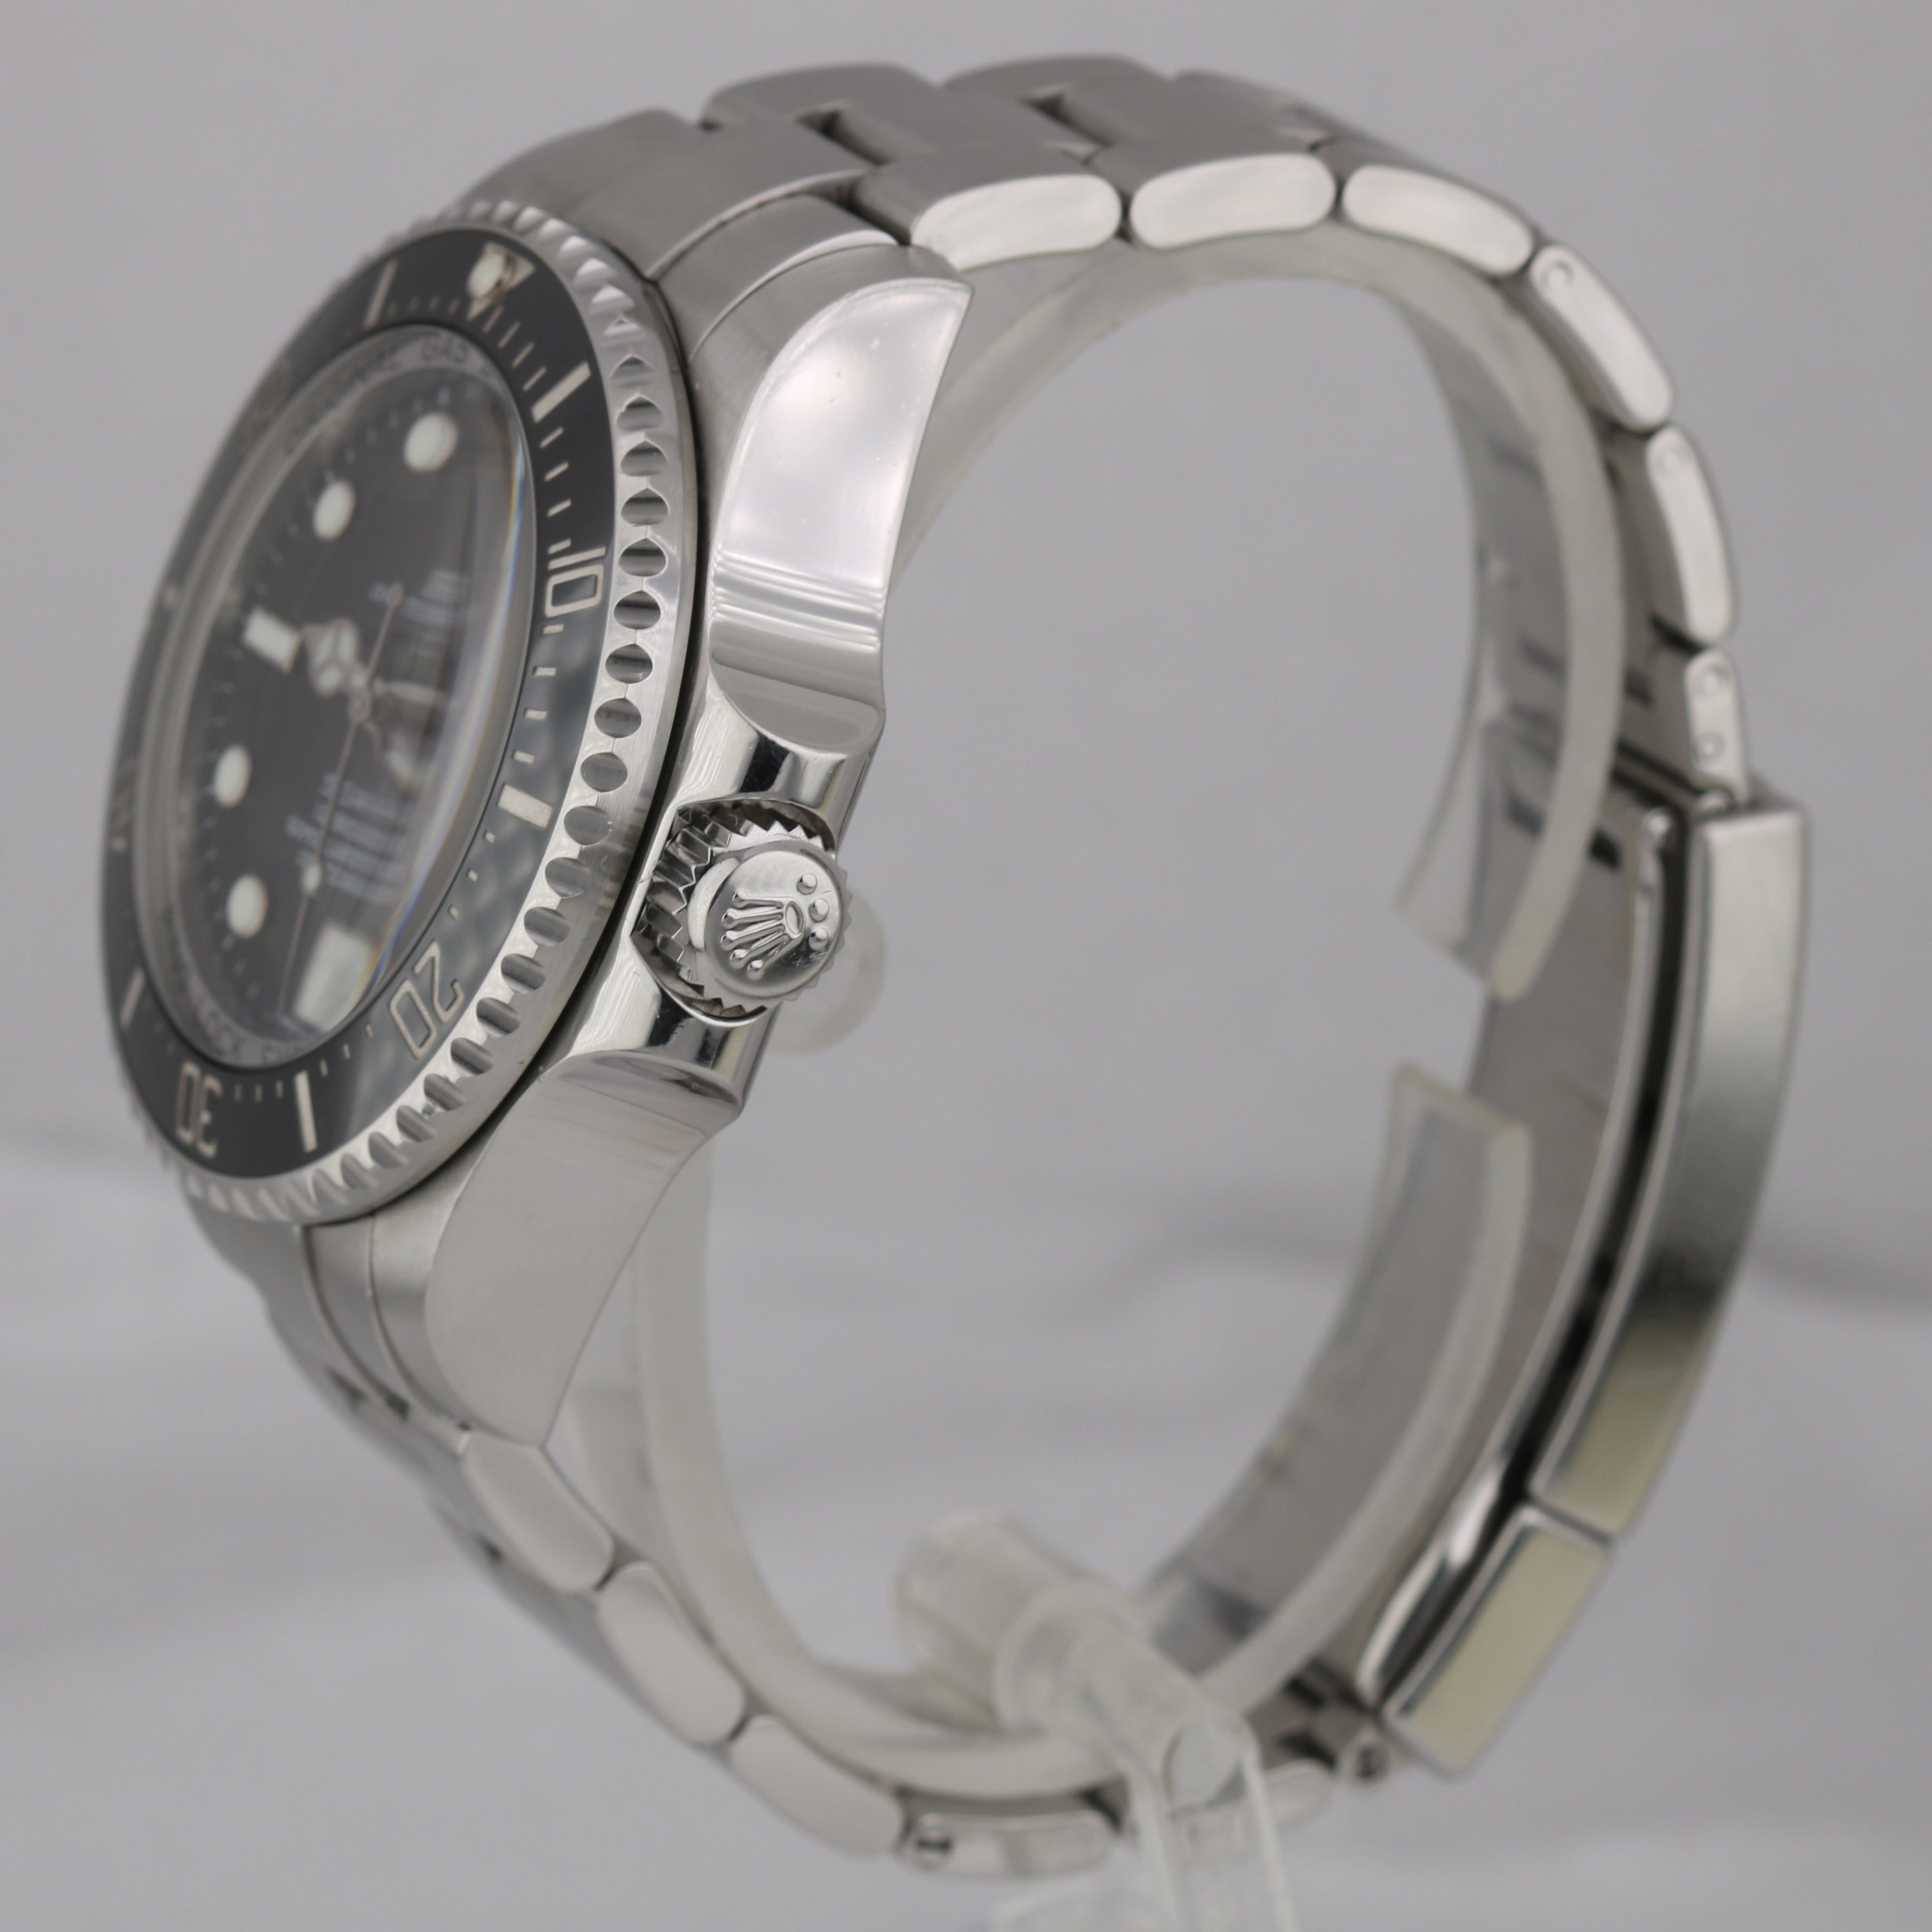 MINT Rolex Sea-Dweller Deepsea Stainless Steel 44mm Black Dive Watch 116660